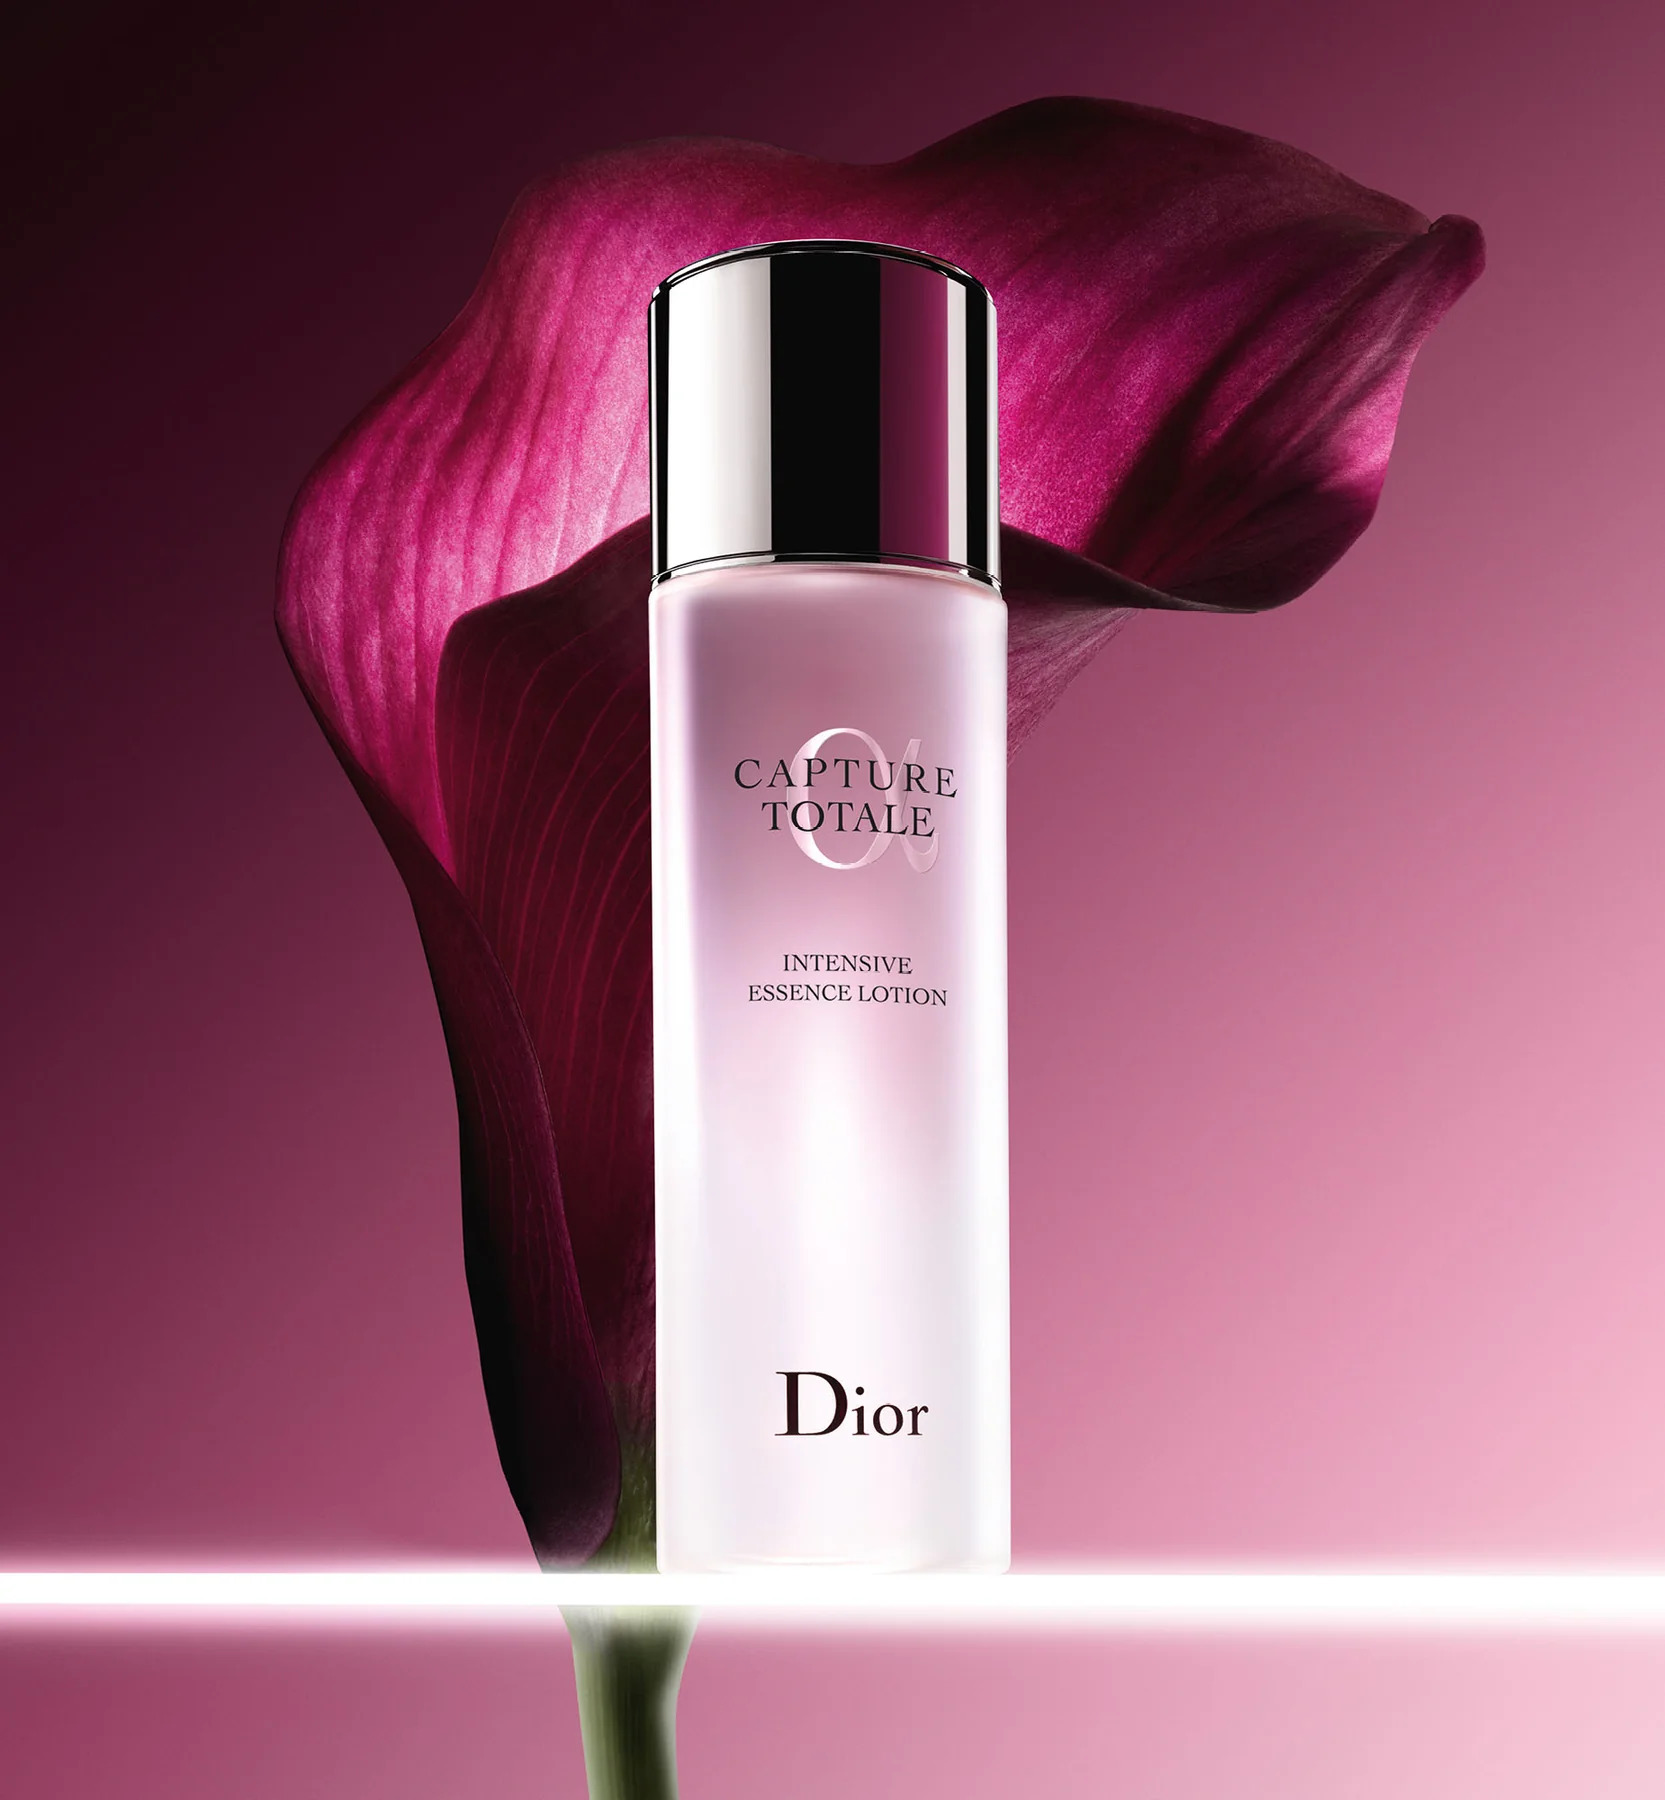 Dior Capture Total Cell Energy 1 set เซ็ตบำรุงผิวจาก DIOR ลดริ้วรอย ฟื้นฟู เปล่งประกาย ครบจบใน 1 เซ็ต พร้อมกระเป๋าสุดน่ารัก